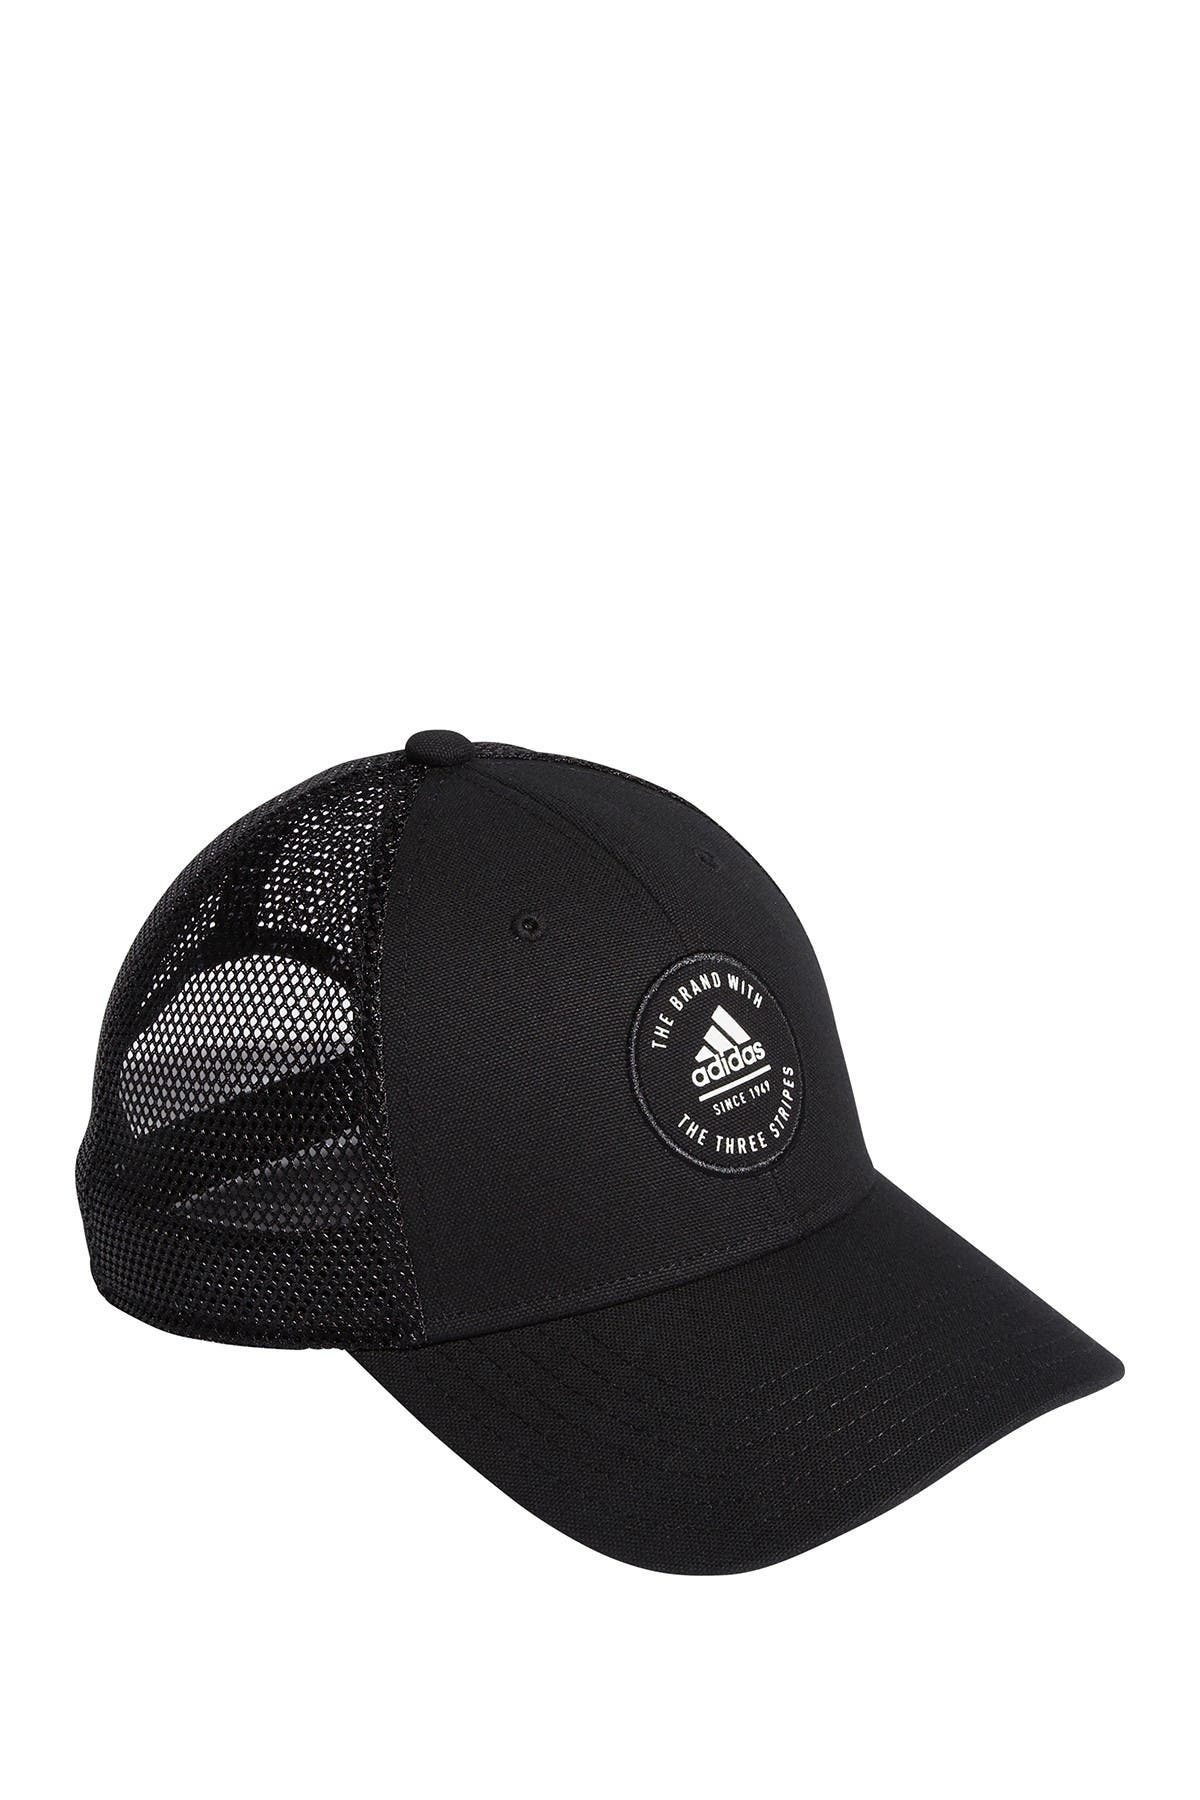 adidas mesh baseball cap